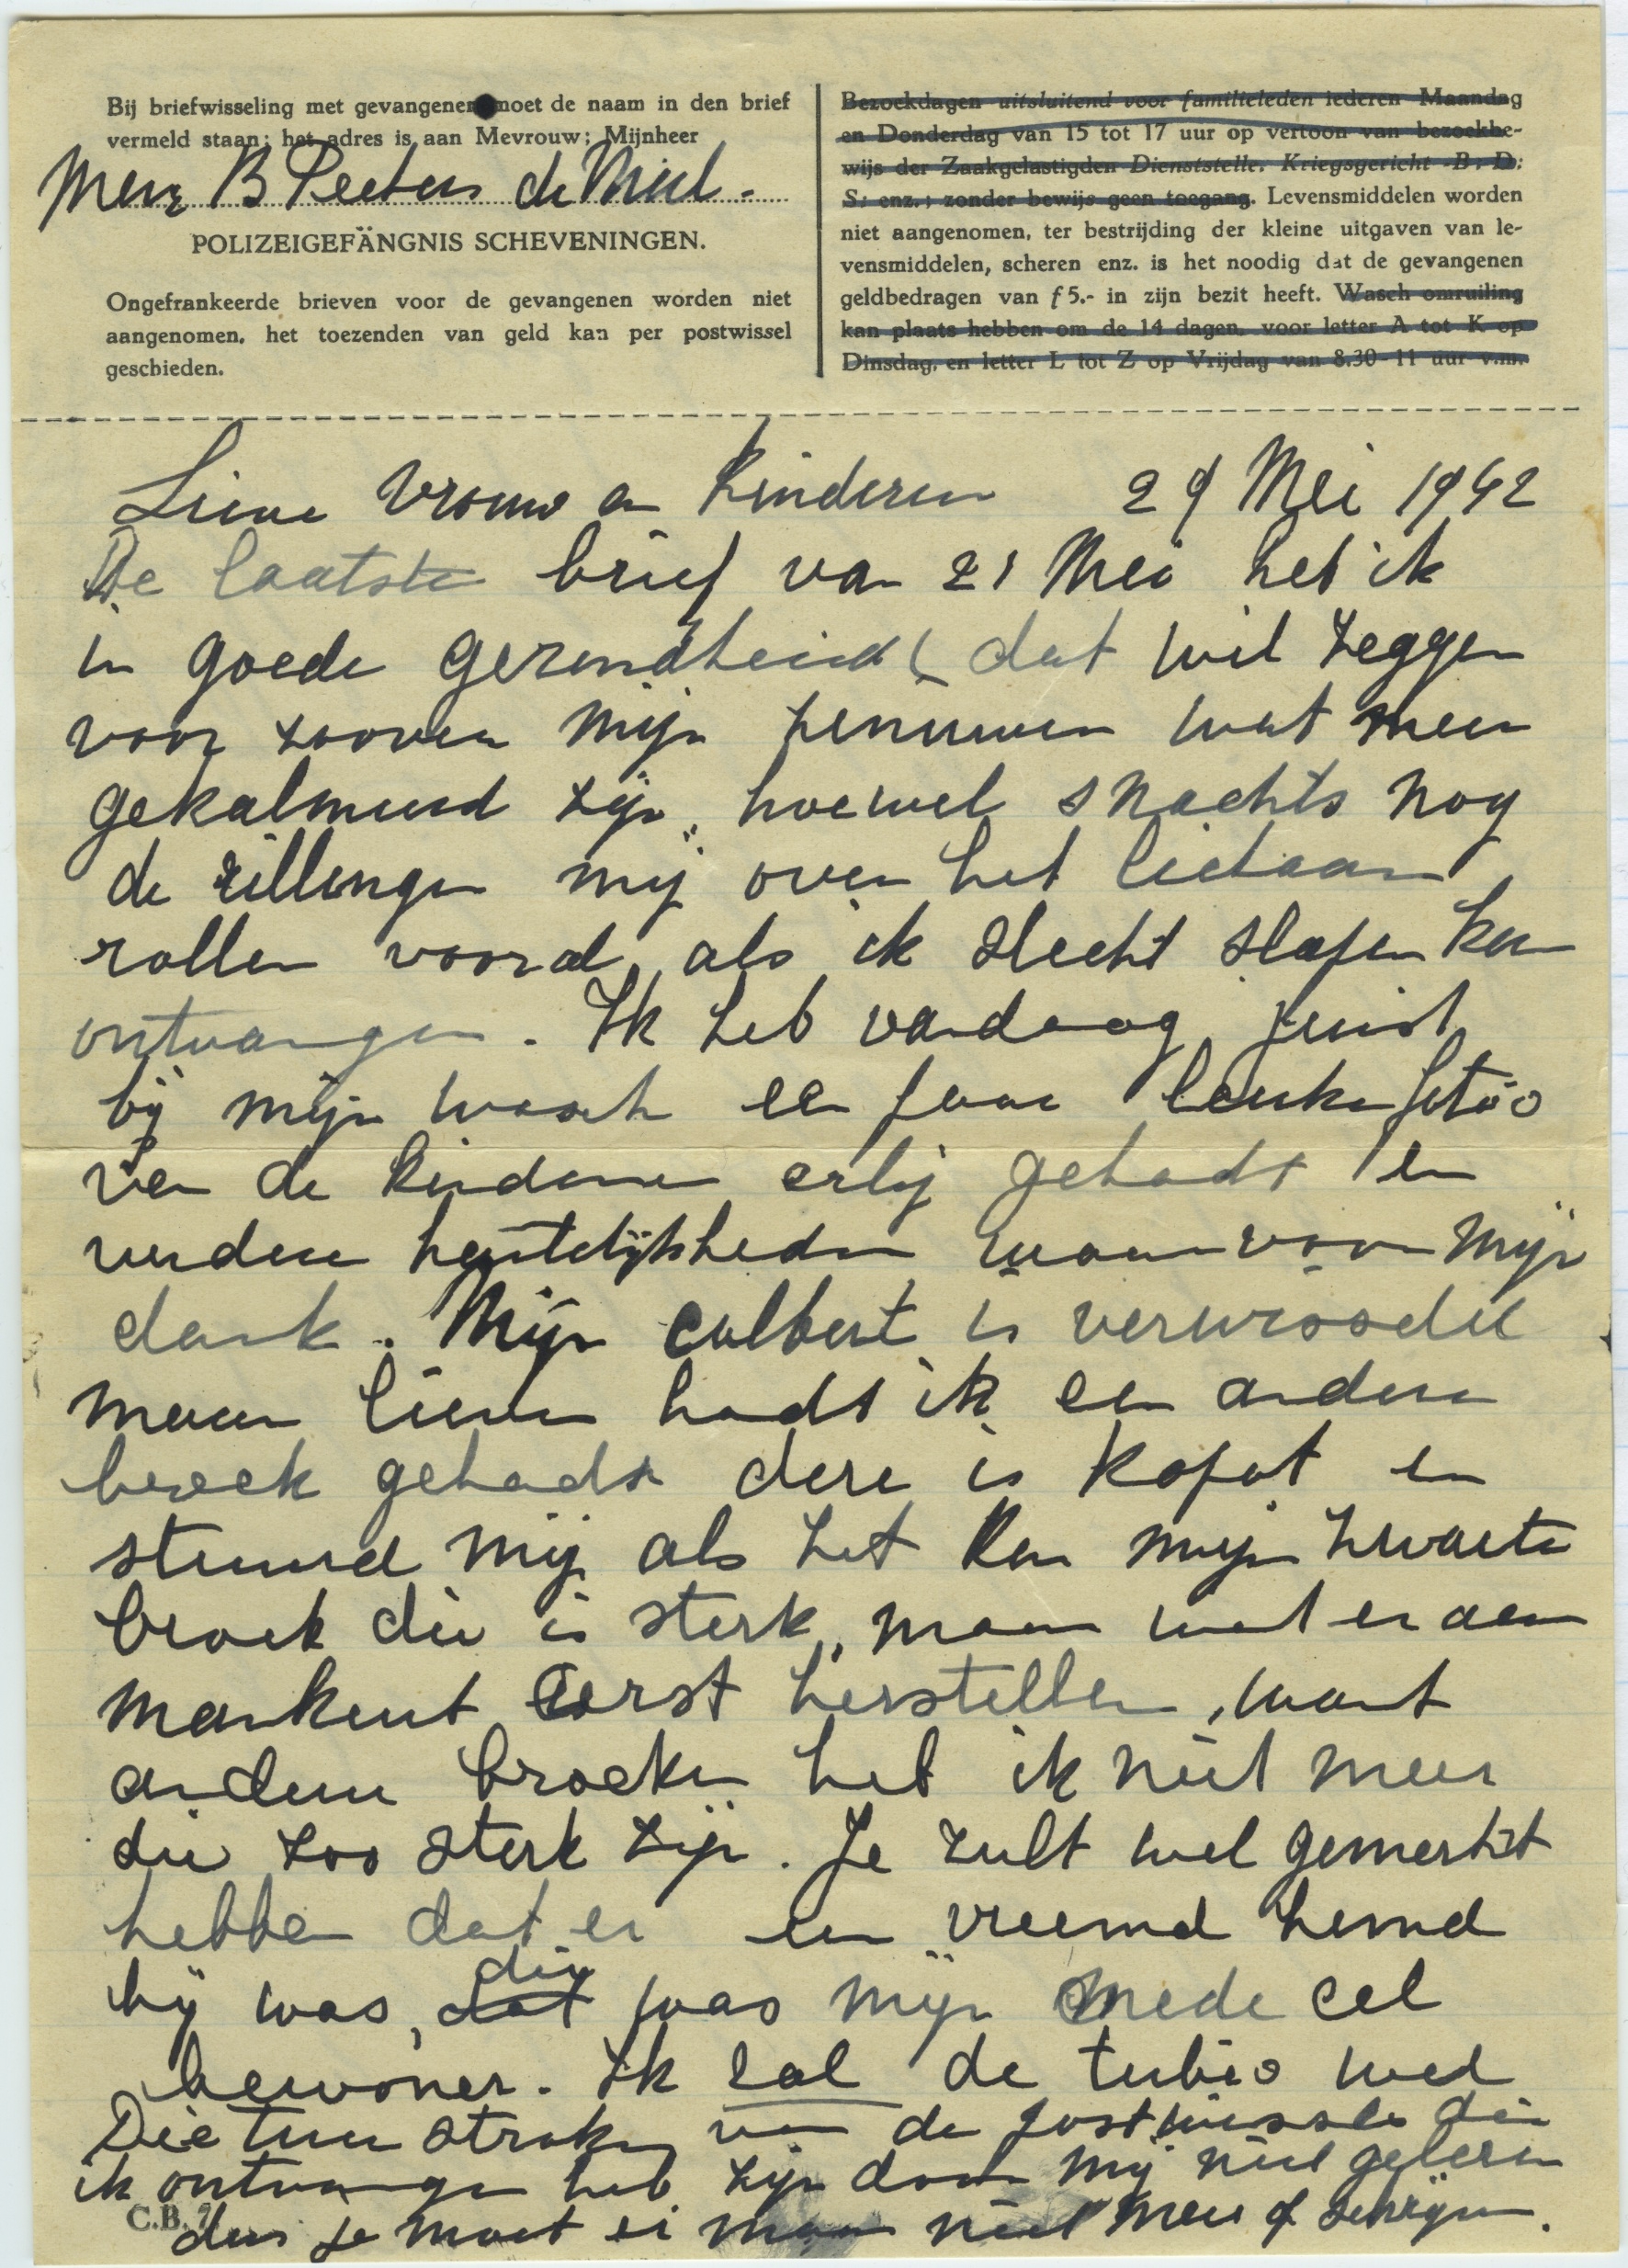 Eerste brief van 5 maart 1943. In het briefhoofd staan de gevangenisregels. In de brief van 29 mei zijn de bezoekdagen en het inruilen van de was doorgestreept. Familiearchief Nico Peeters.